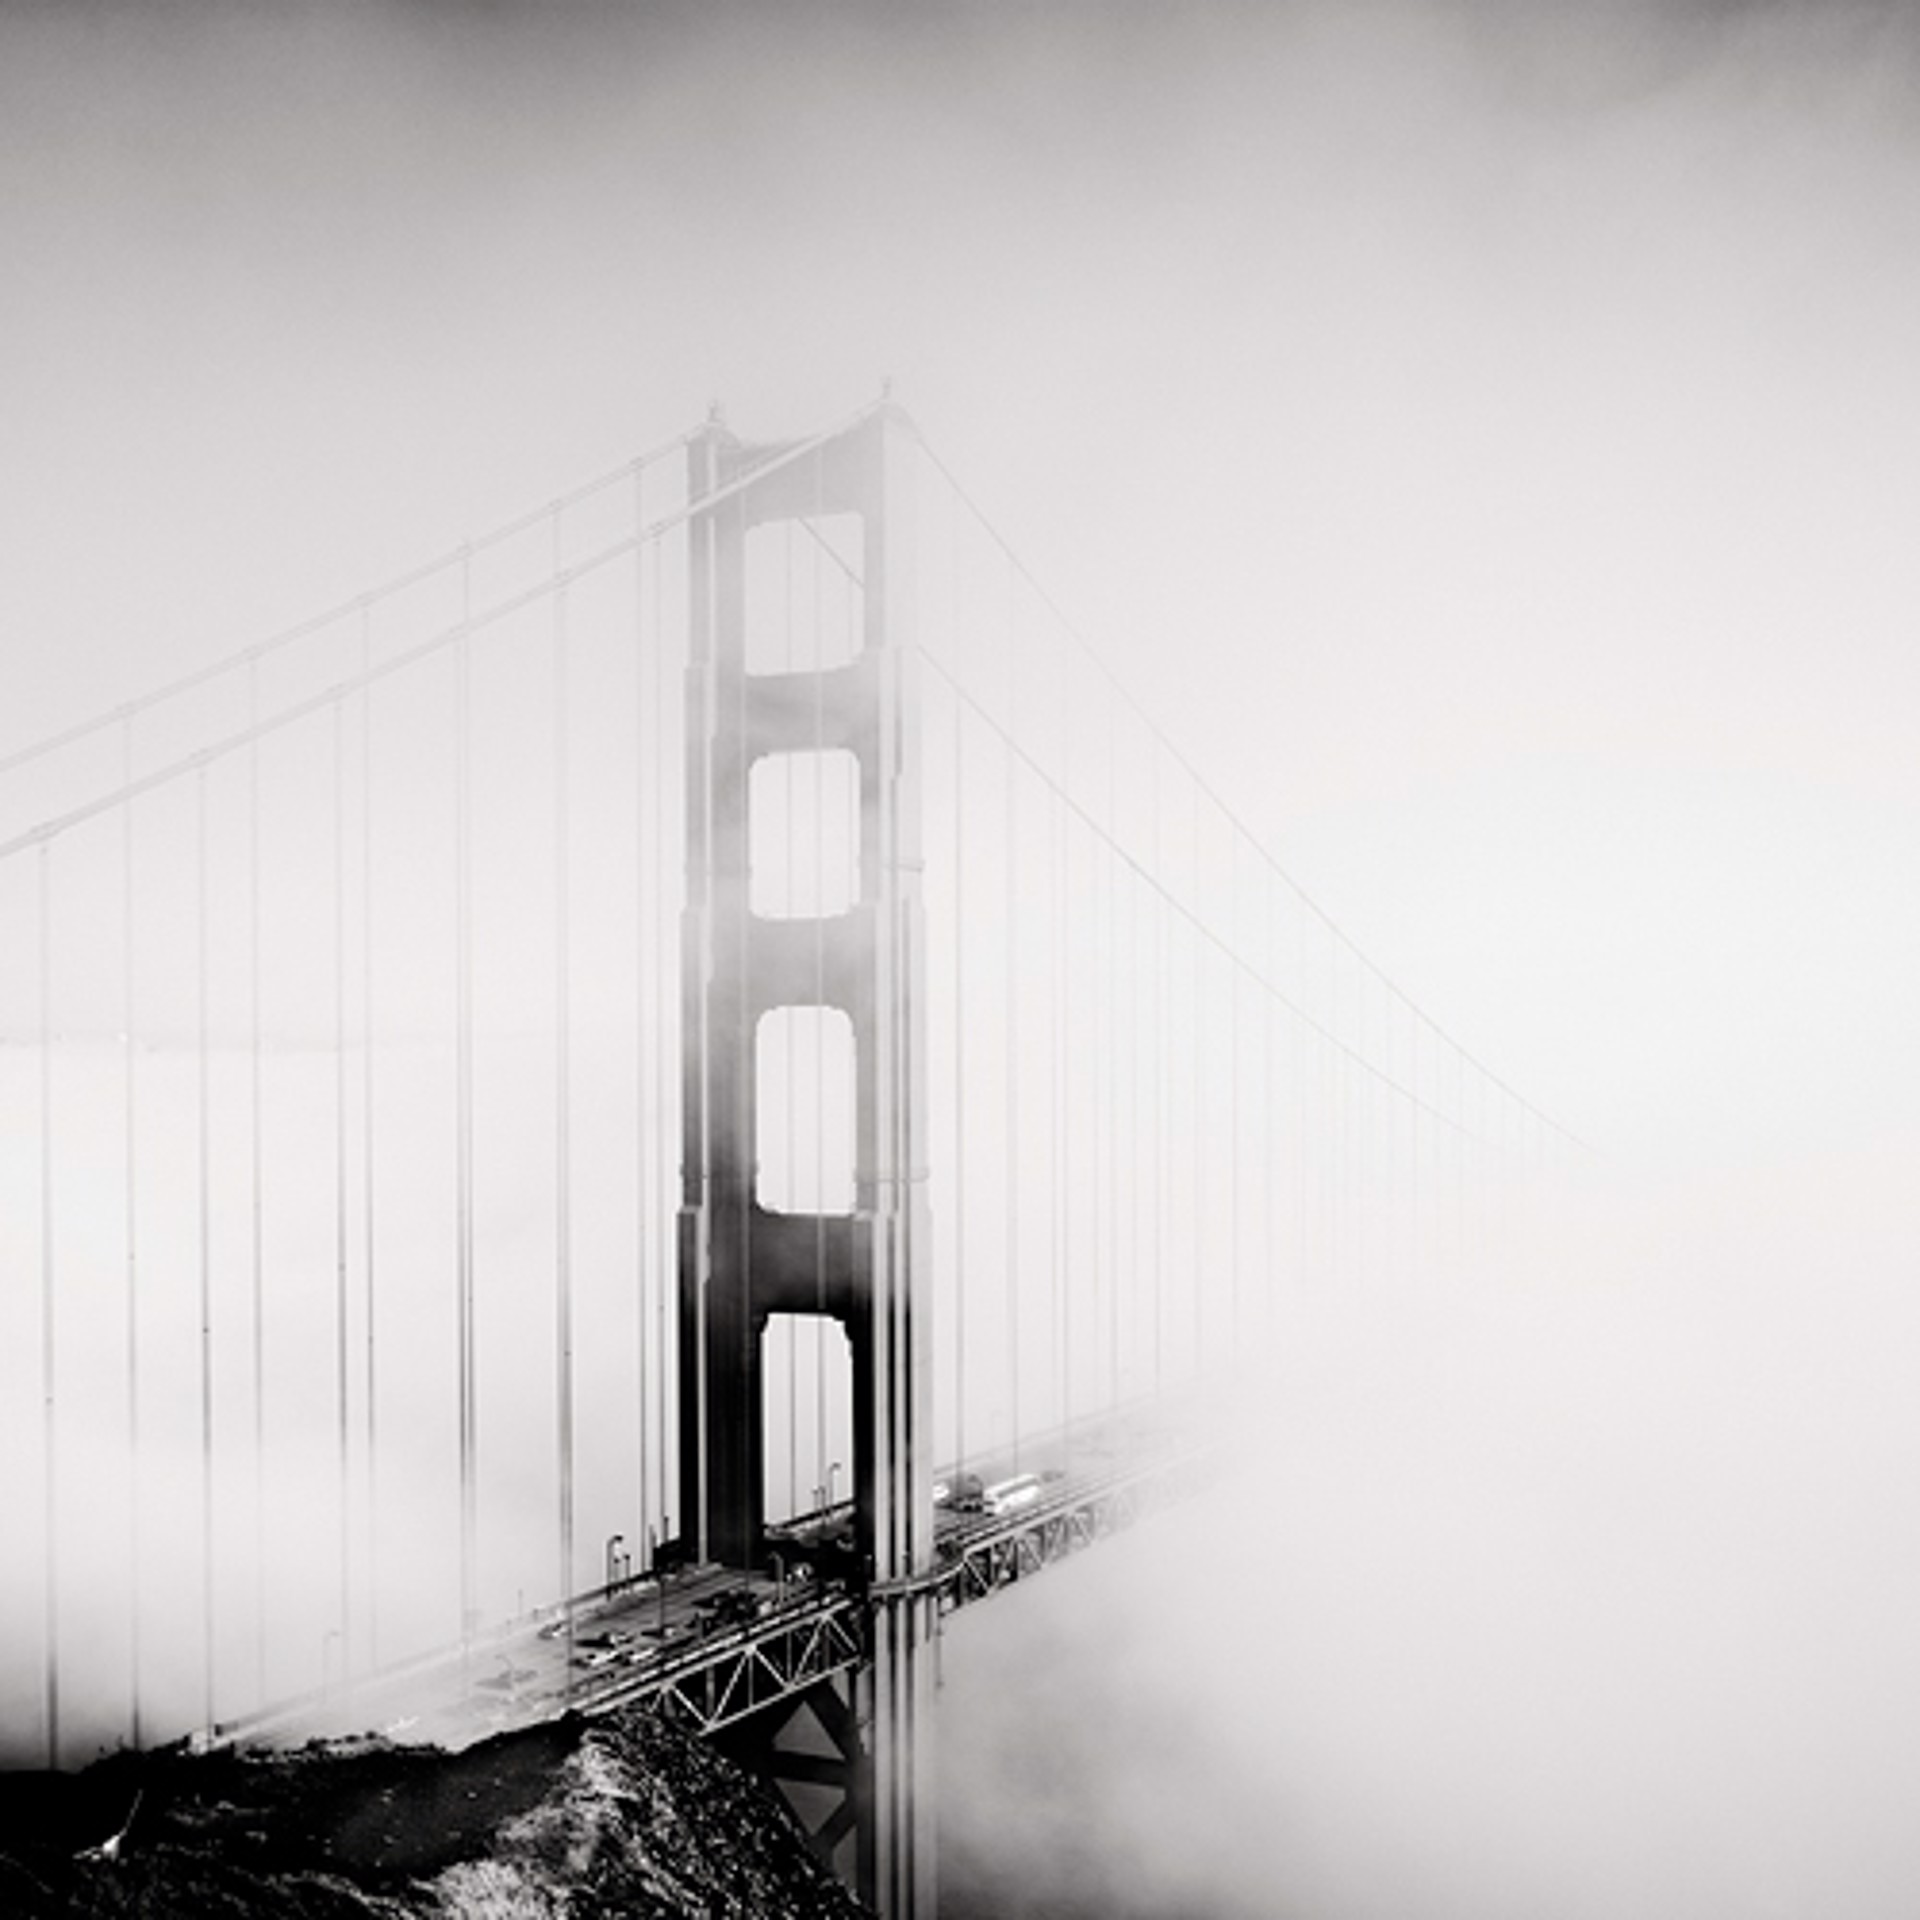 Golden Gate, Study 2 by Josef Hoflehner